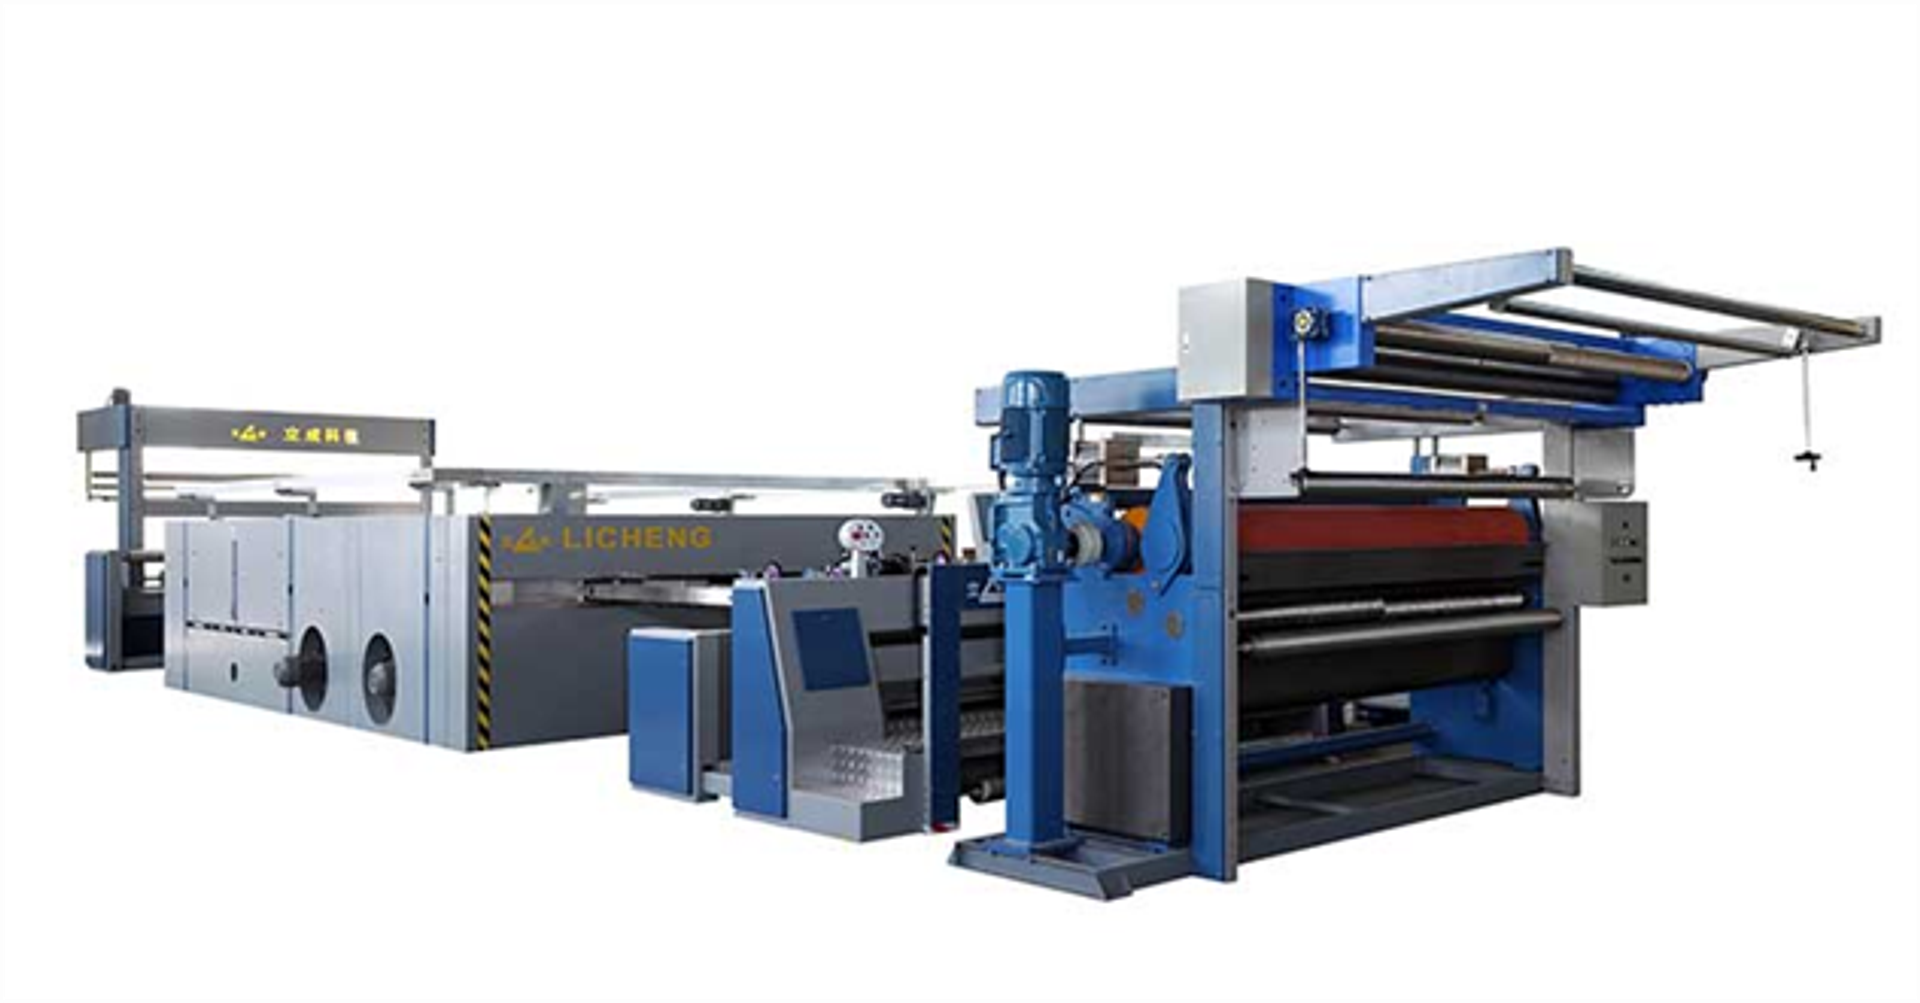 Zhejiang Licheng Printing & Dyeing Machinery Technology Co.,Ltd